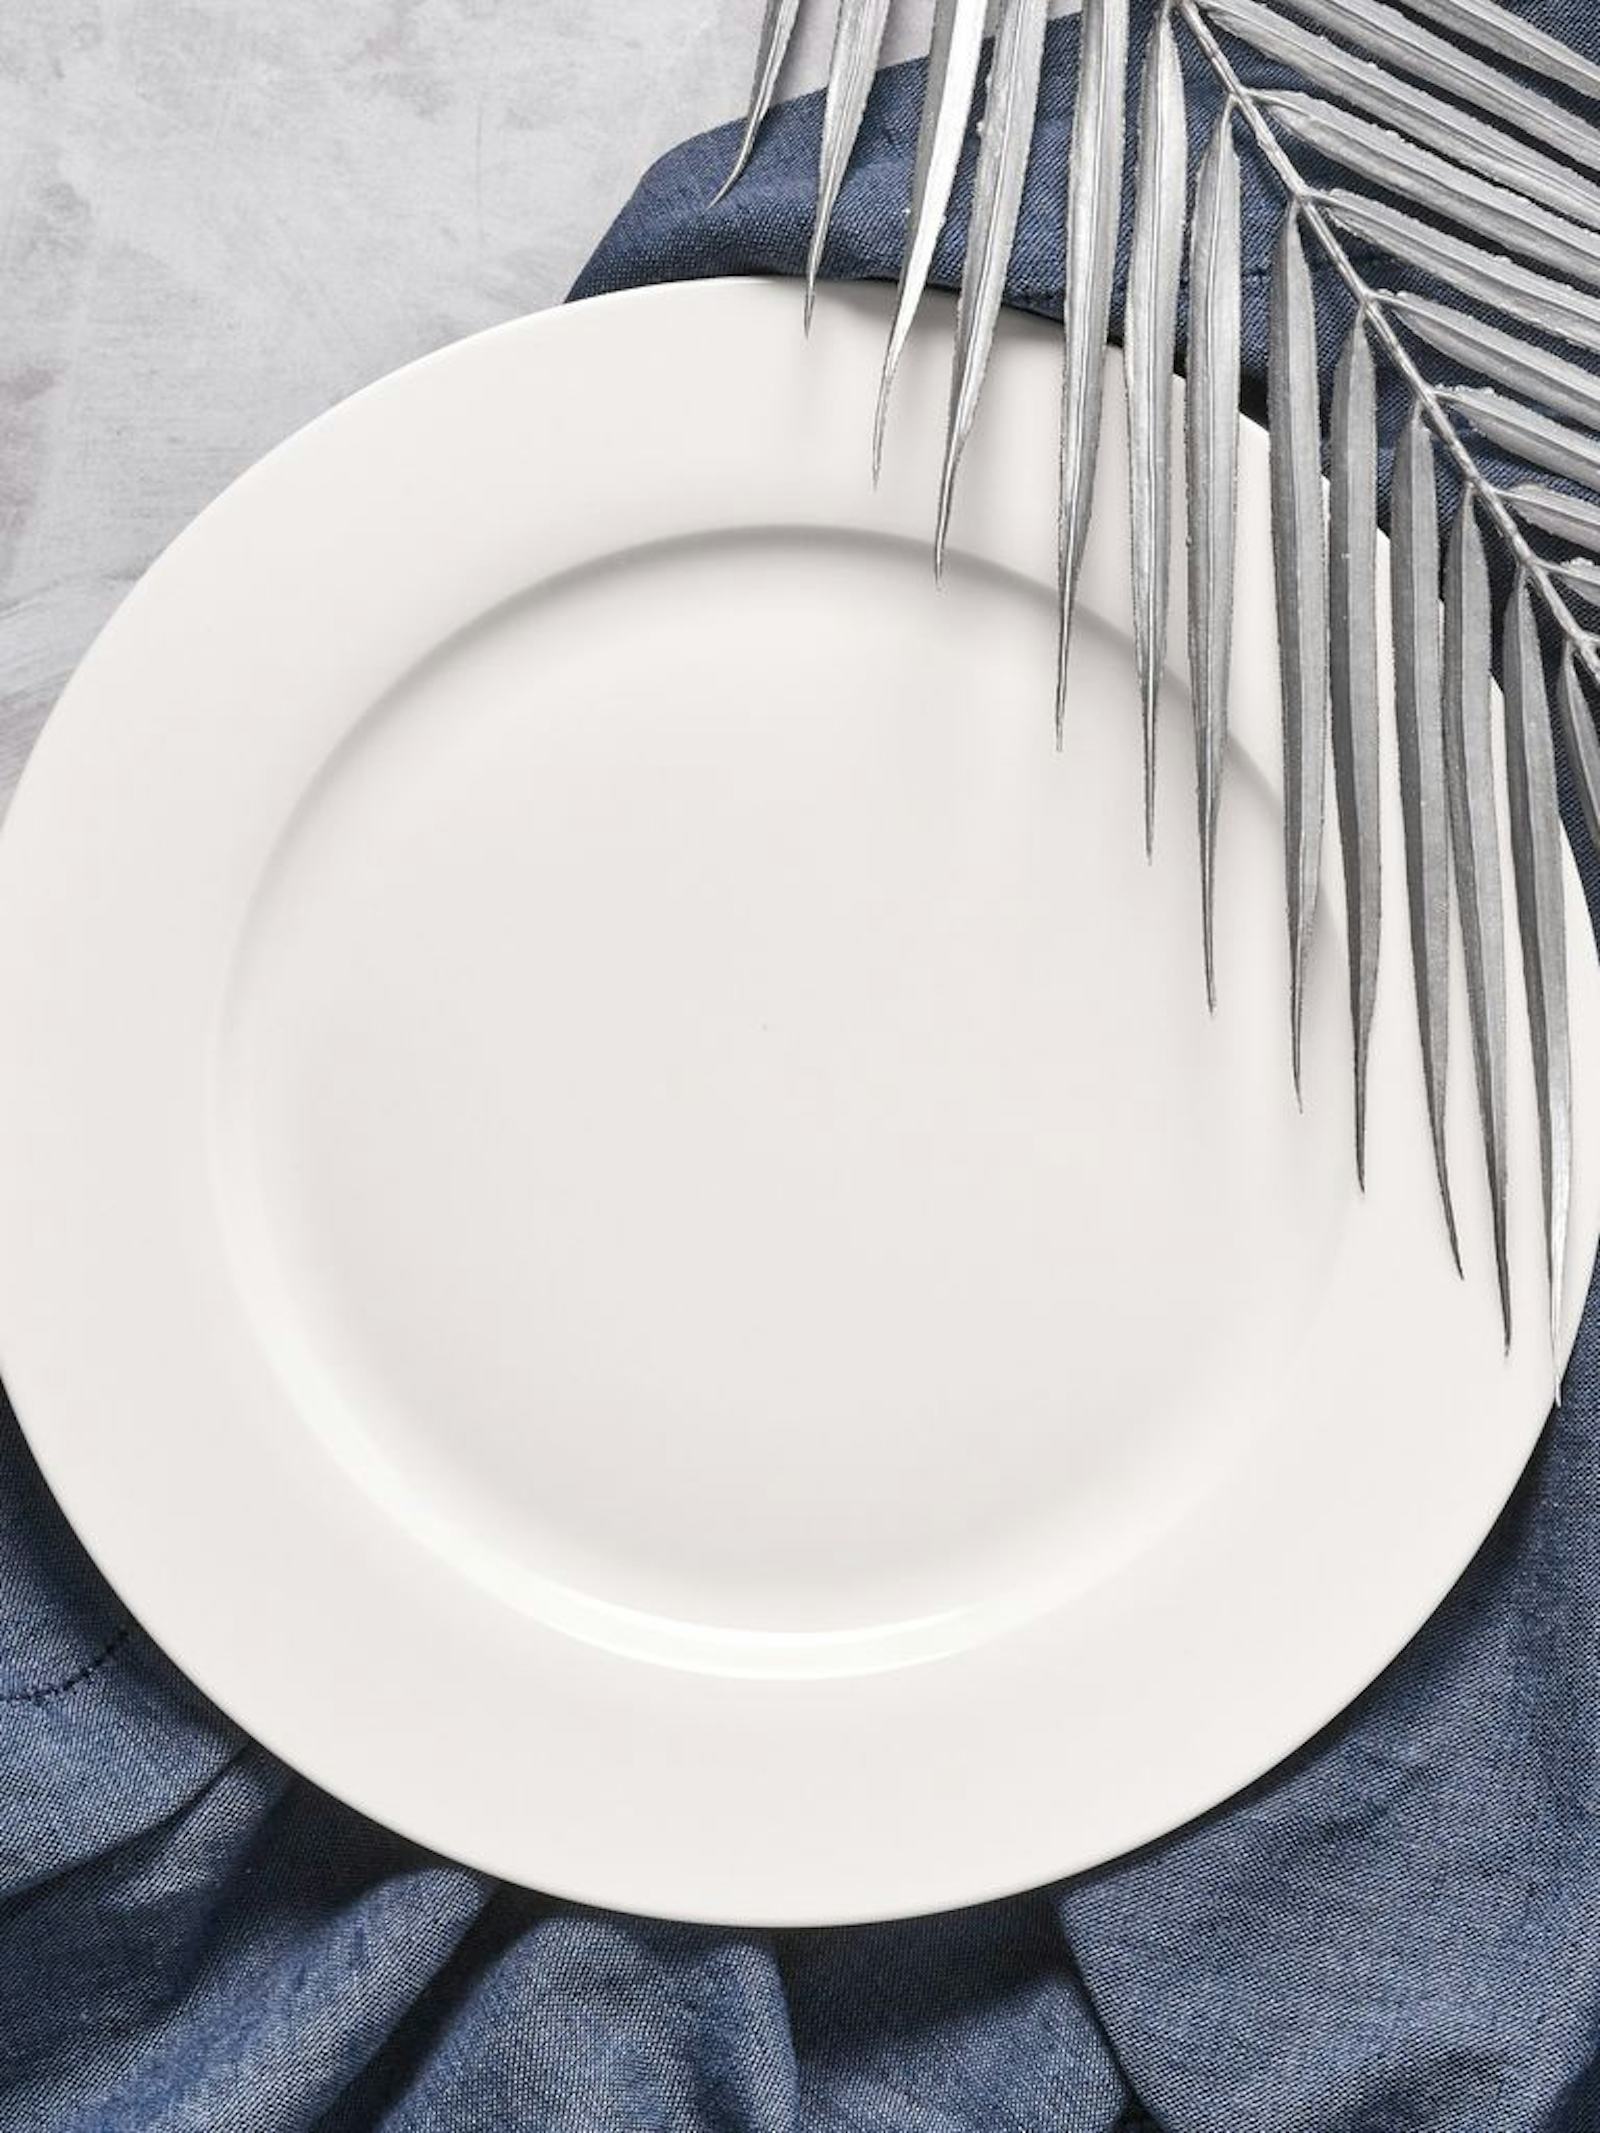 Klasyczne okrągłe talerze obiadowe gładkie i z wzorami.